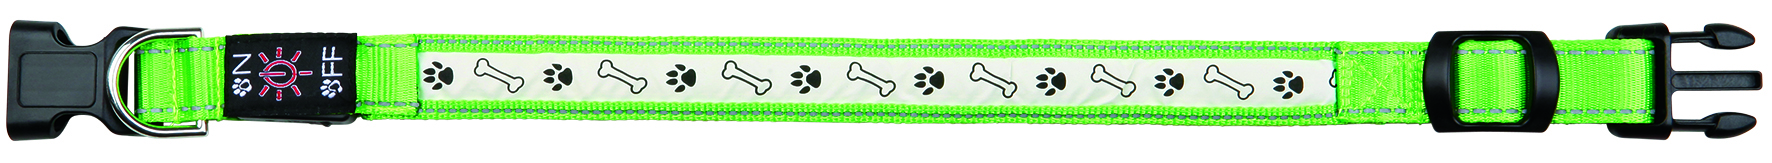 Ошейник светящийся USB кабель зелёный, Trixie от зоомагазина Дино Зоо